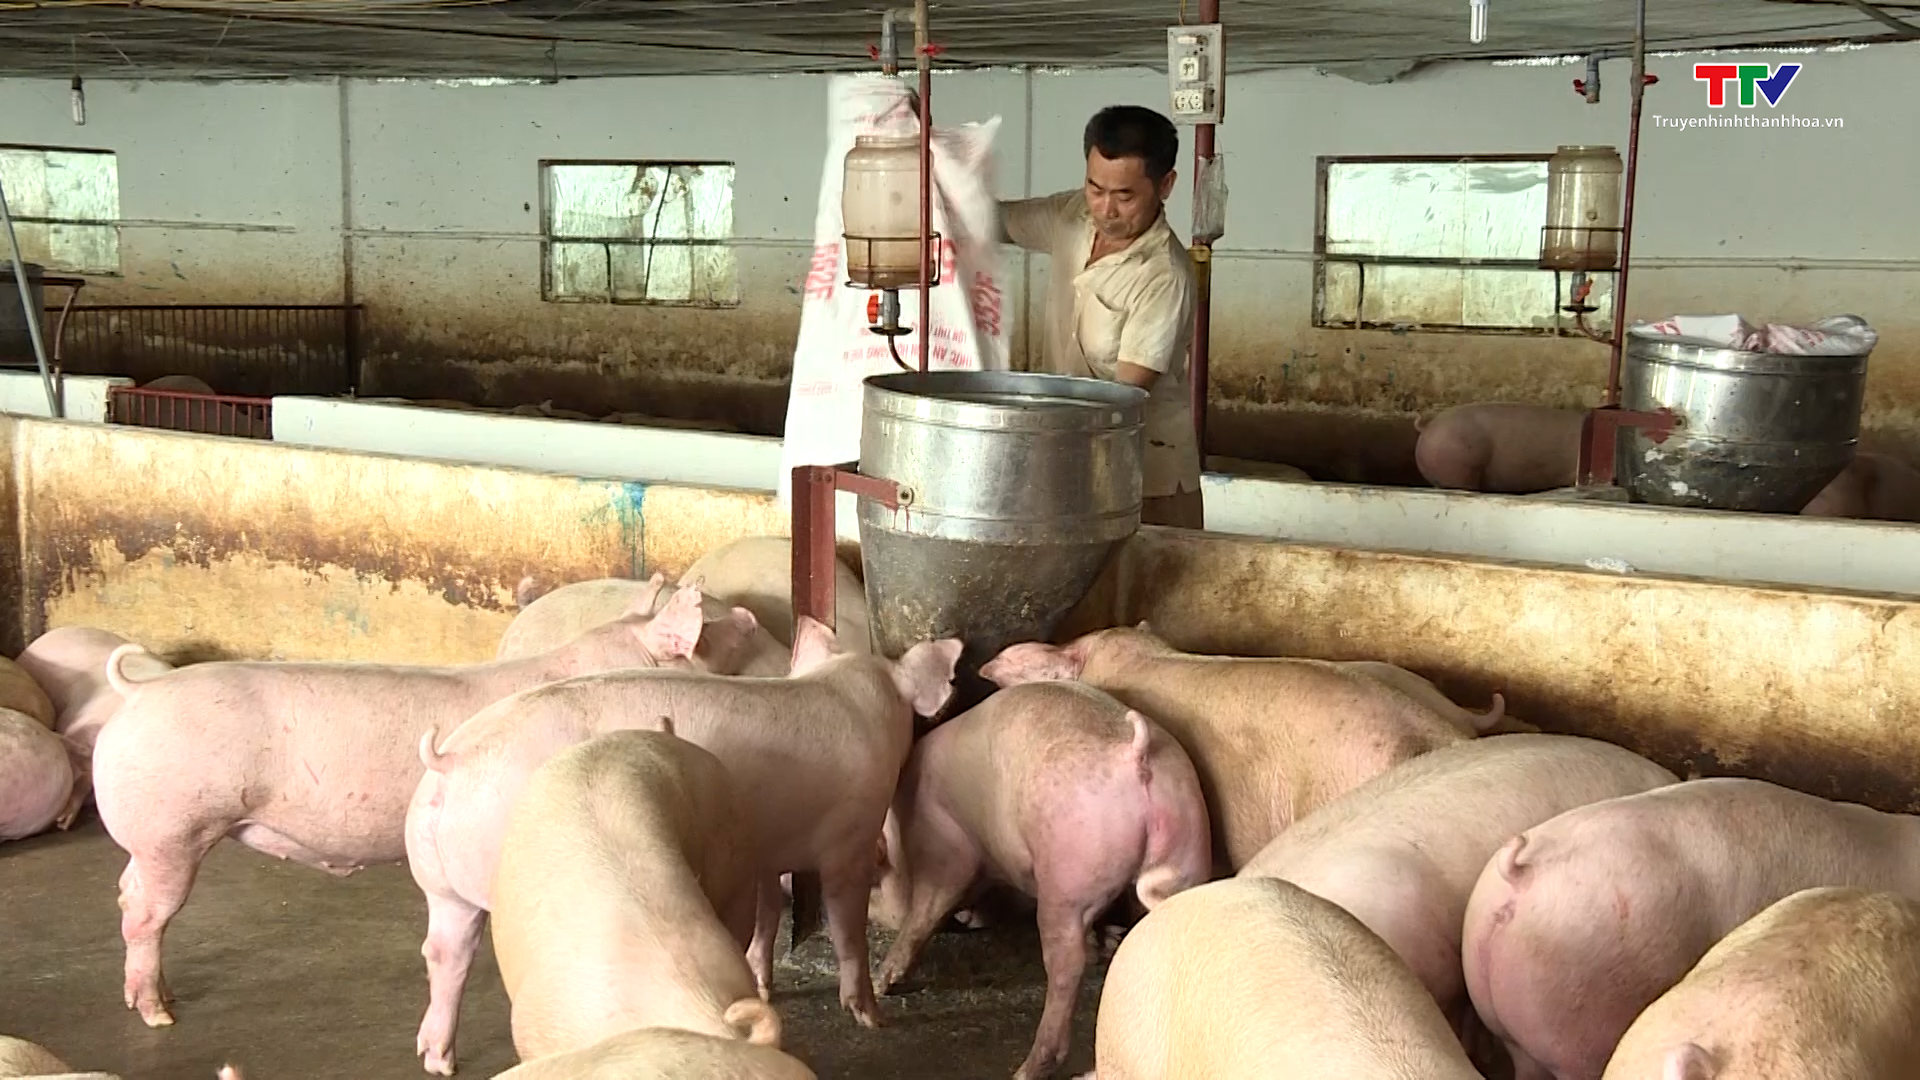 Giá lợn hơi tăng ổn định, người chăn nuôi yên tâm sản xuất - Ảnh 2.